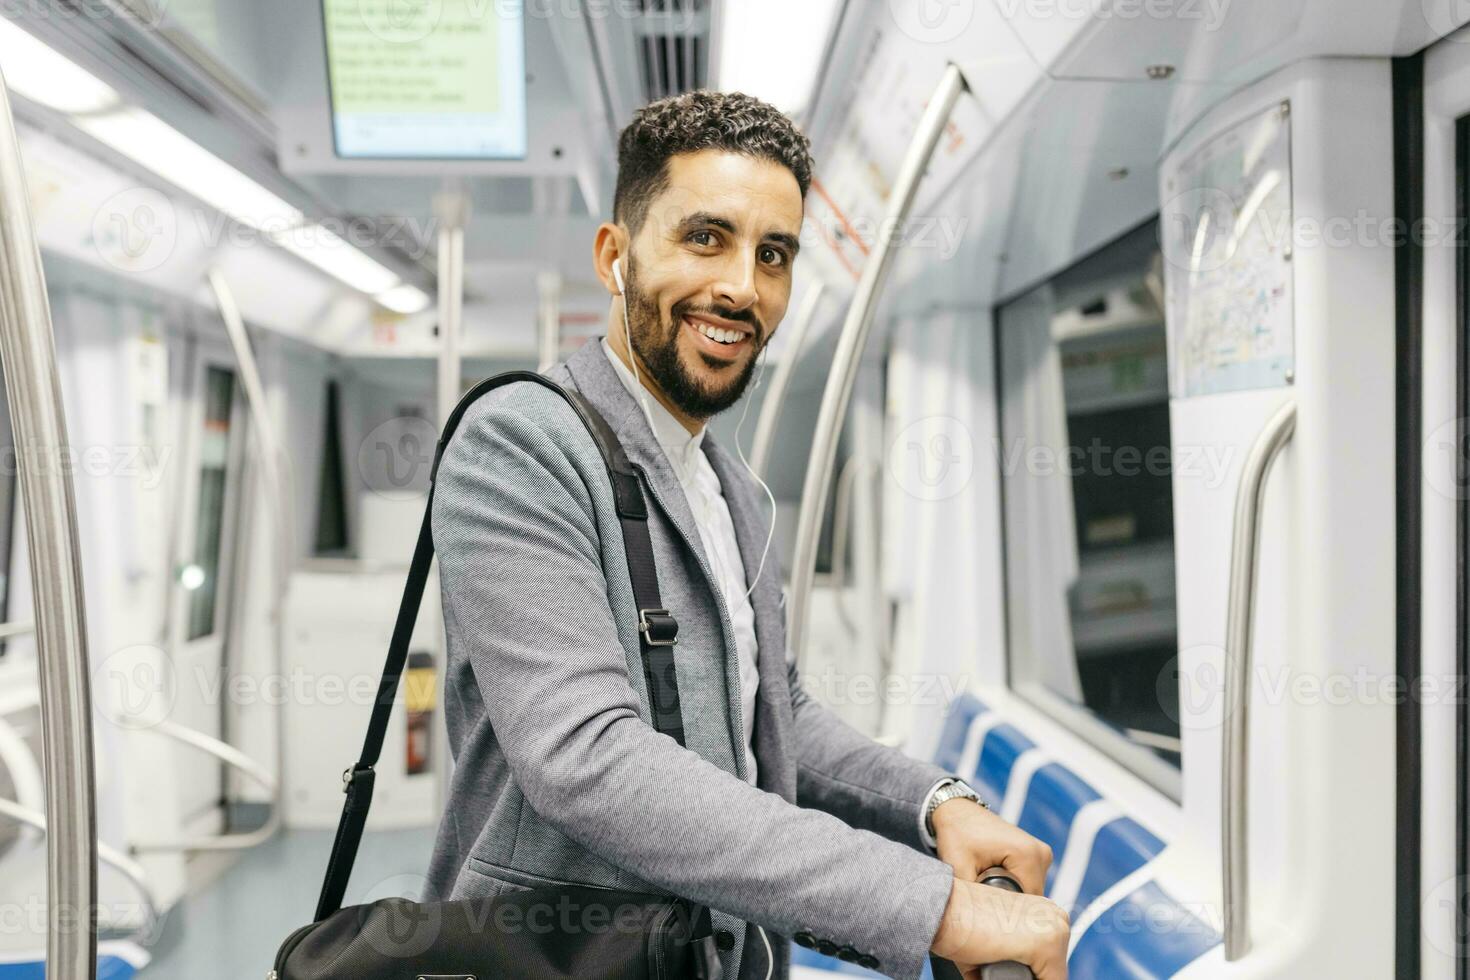 porträtt av leende ung affärsman med hörlurar på de tunnelbana foto